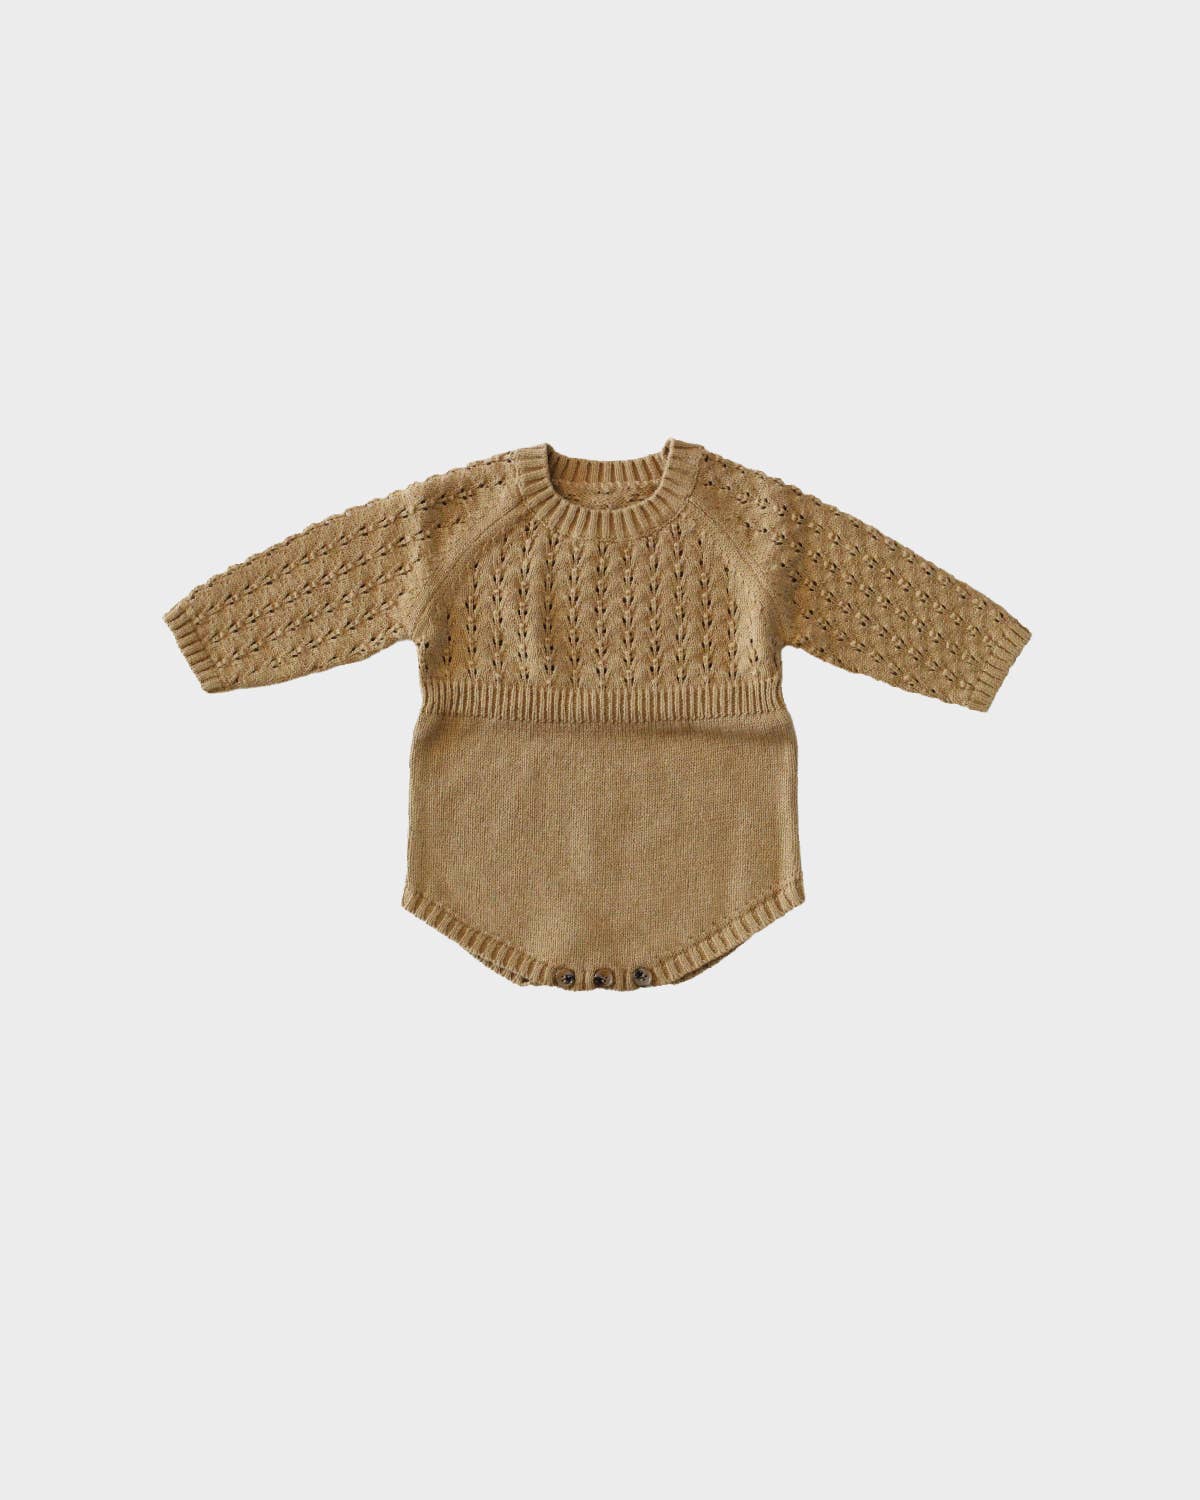 Baby Knit Sweater Romper in Mustard